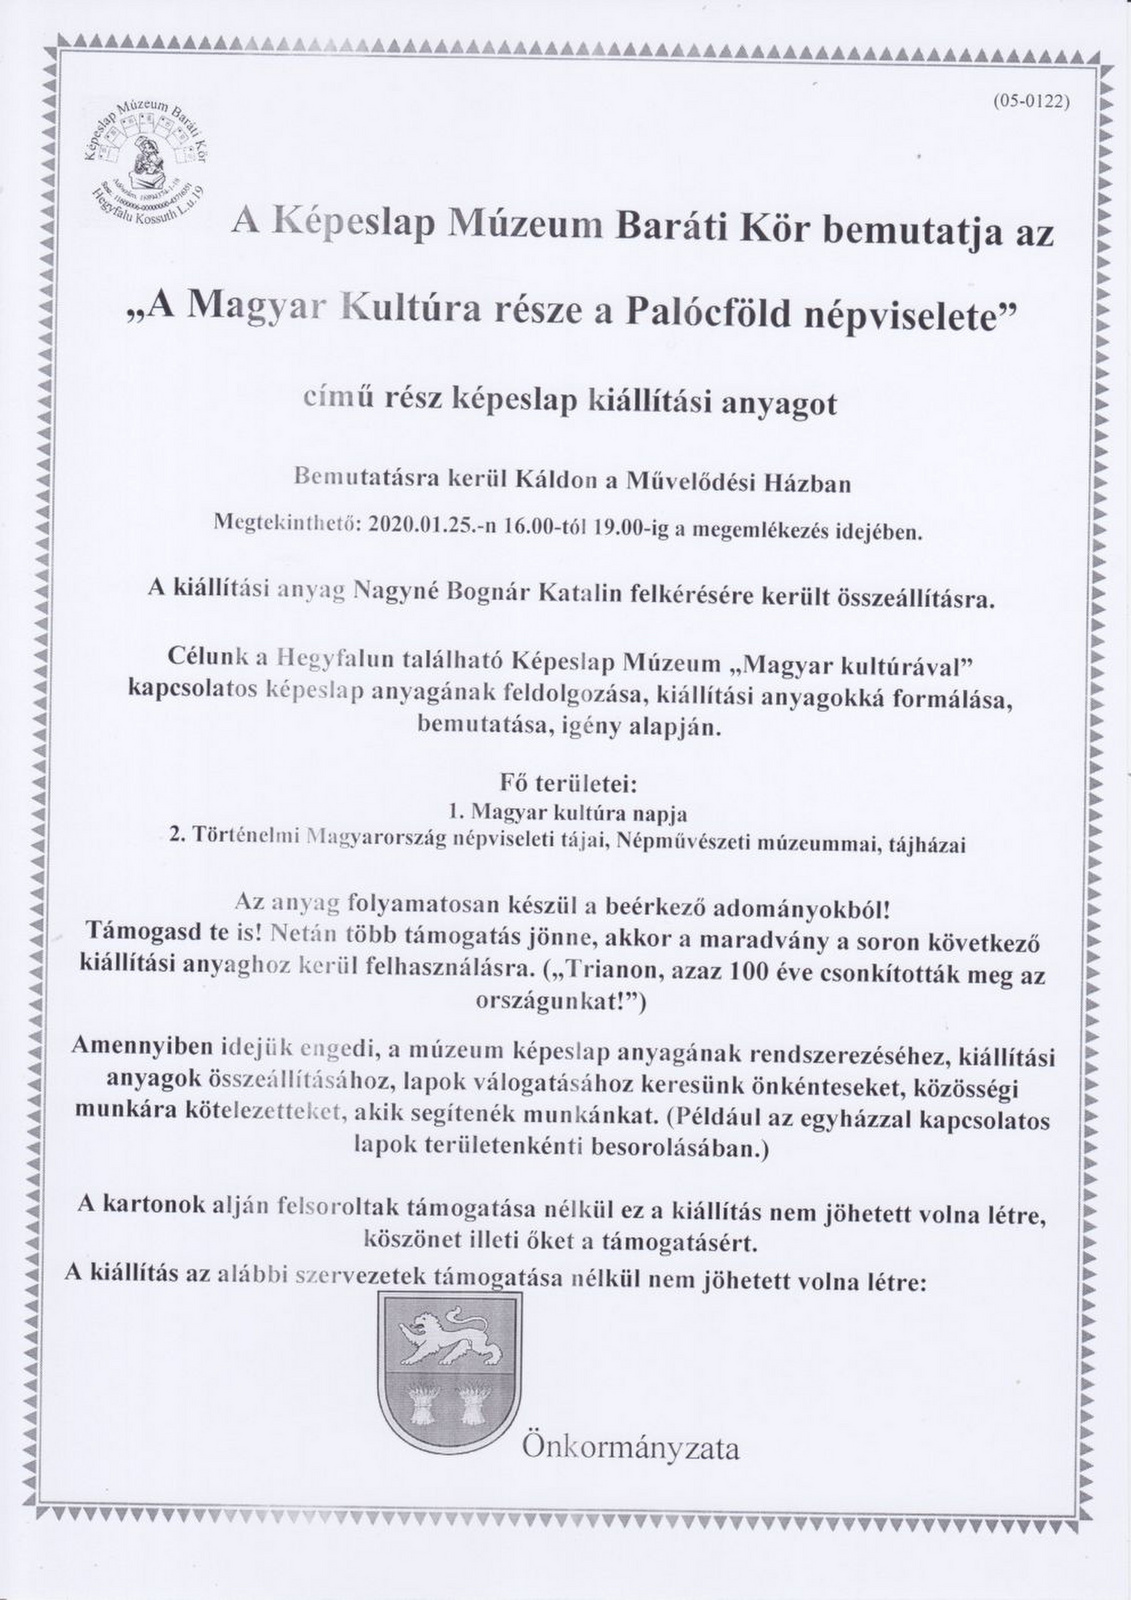 20200125-05 0122 Magyar kultúra napja-Káld-Művalődési Ház